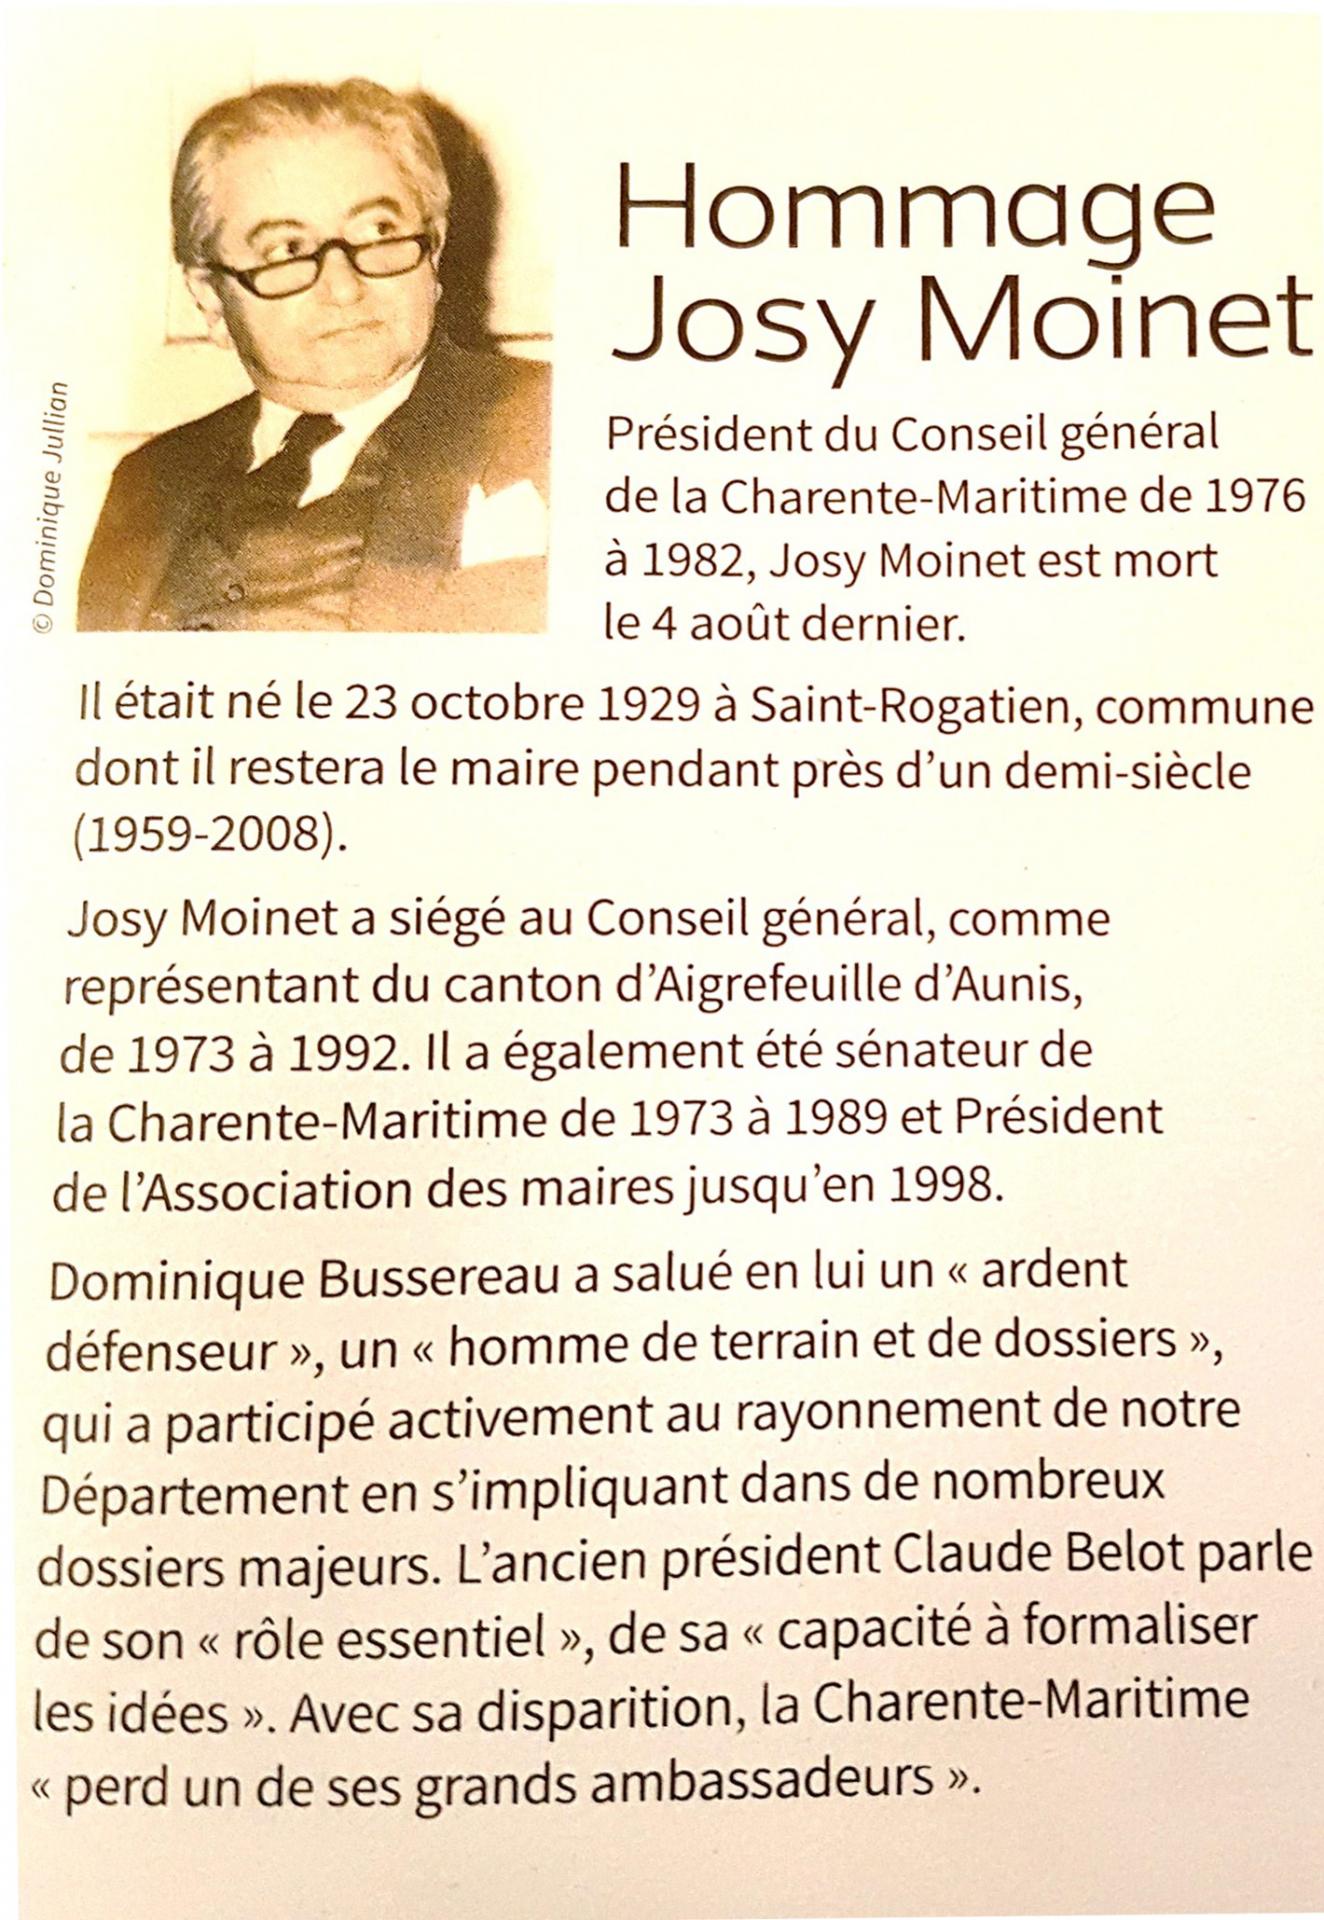 0 josy moinet magazine 17 sept 2018